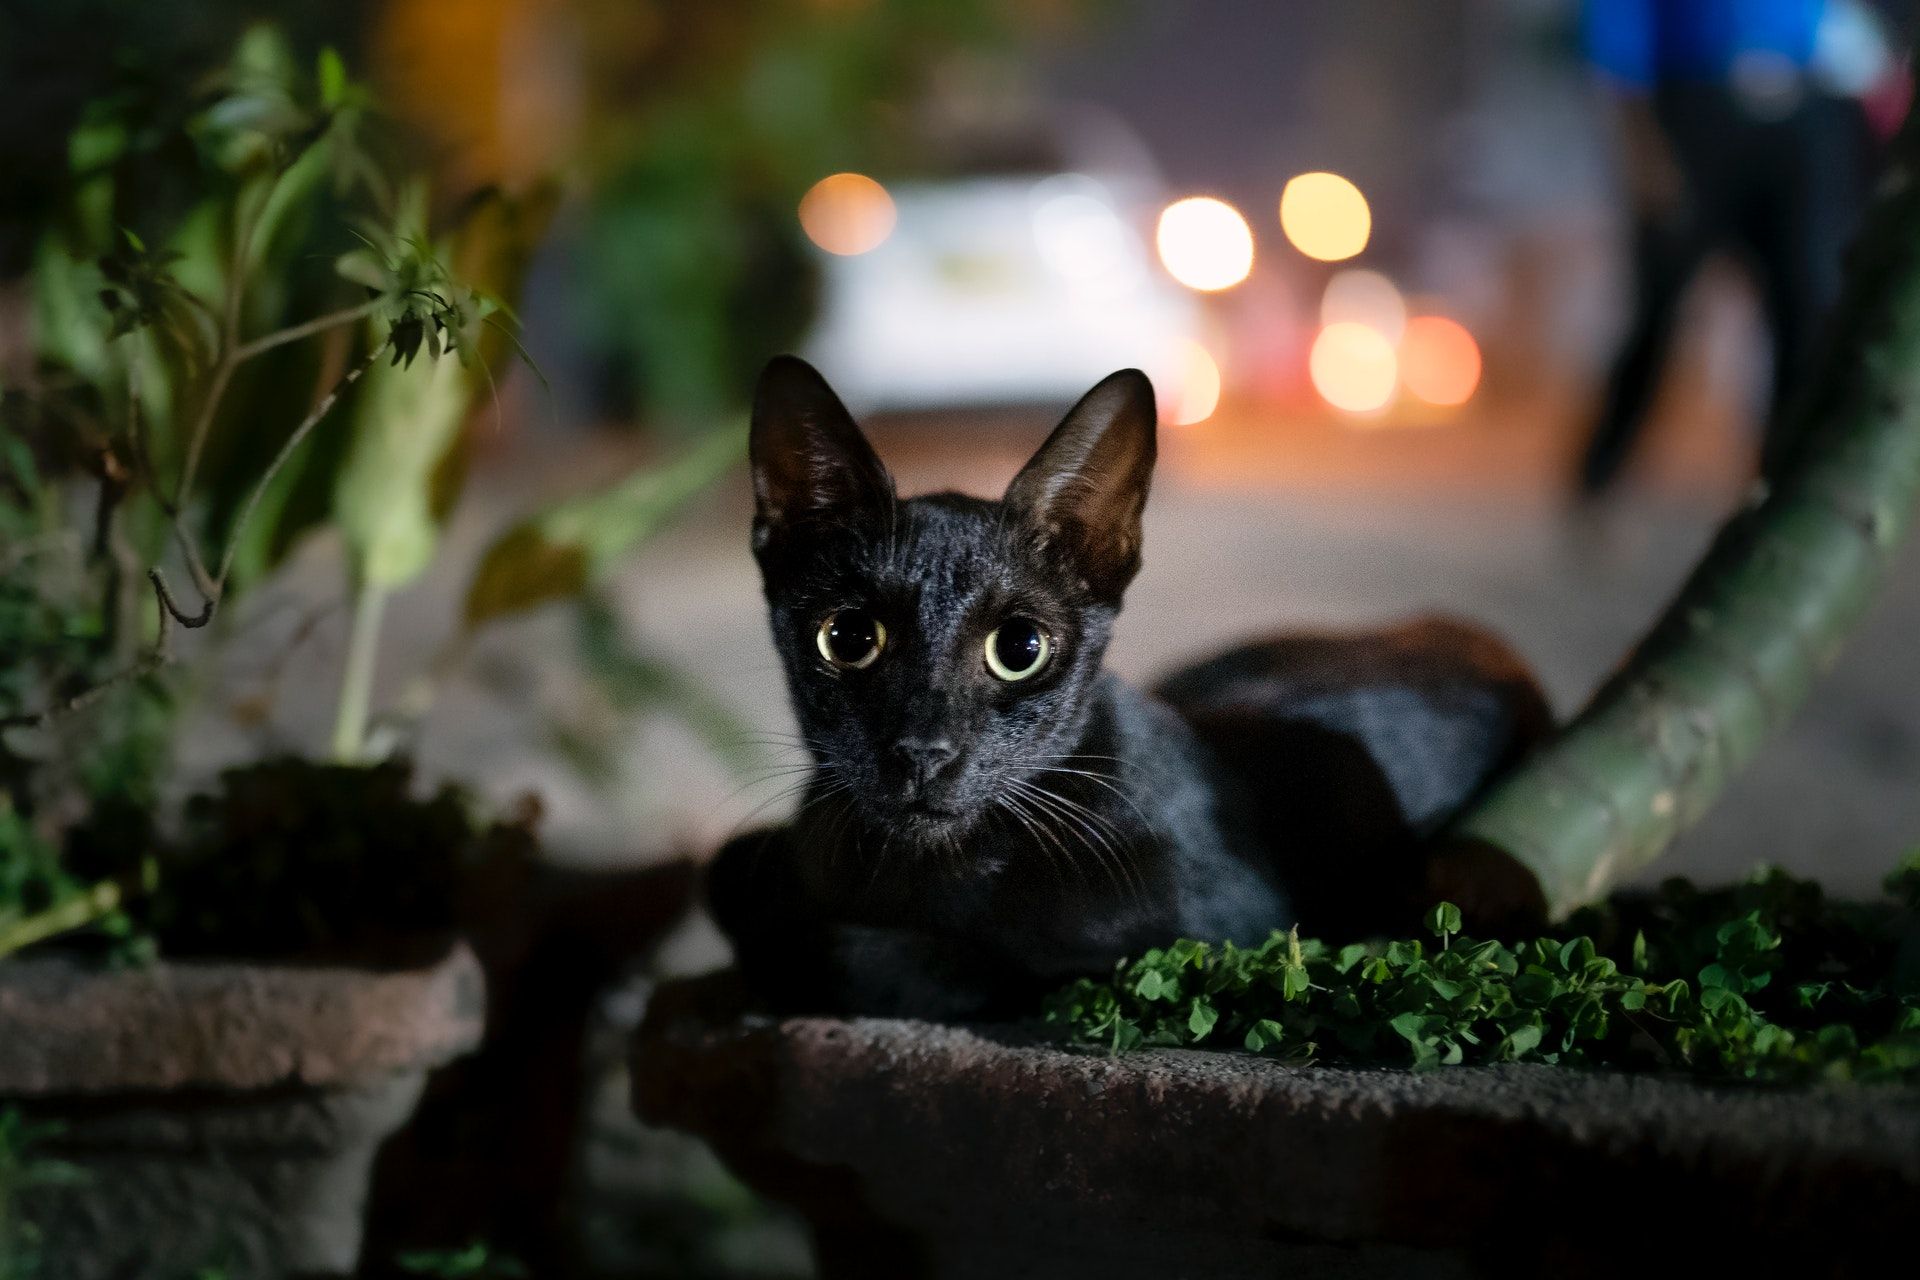 A black cat along a city street